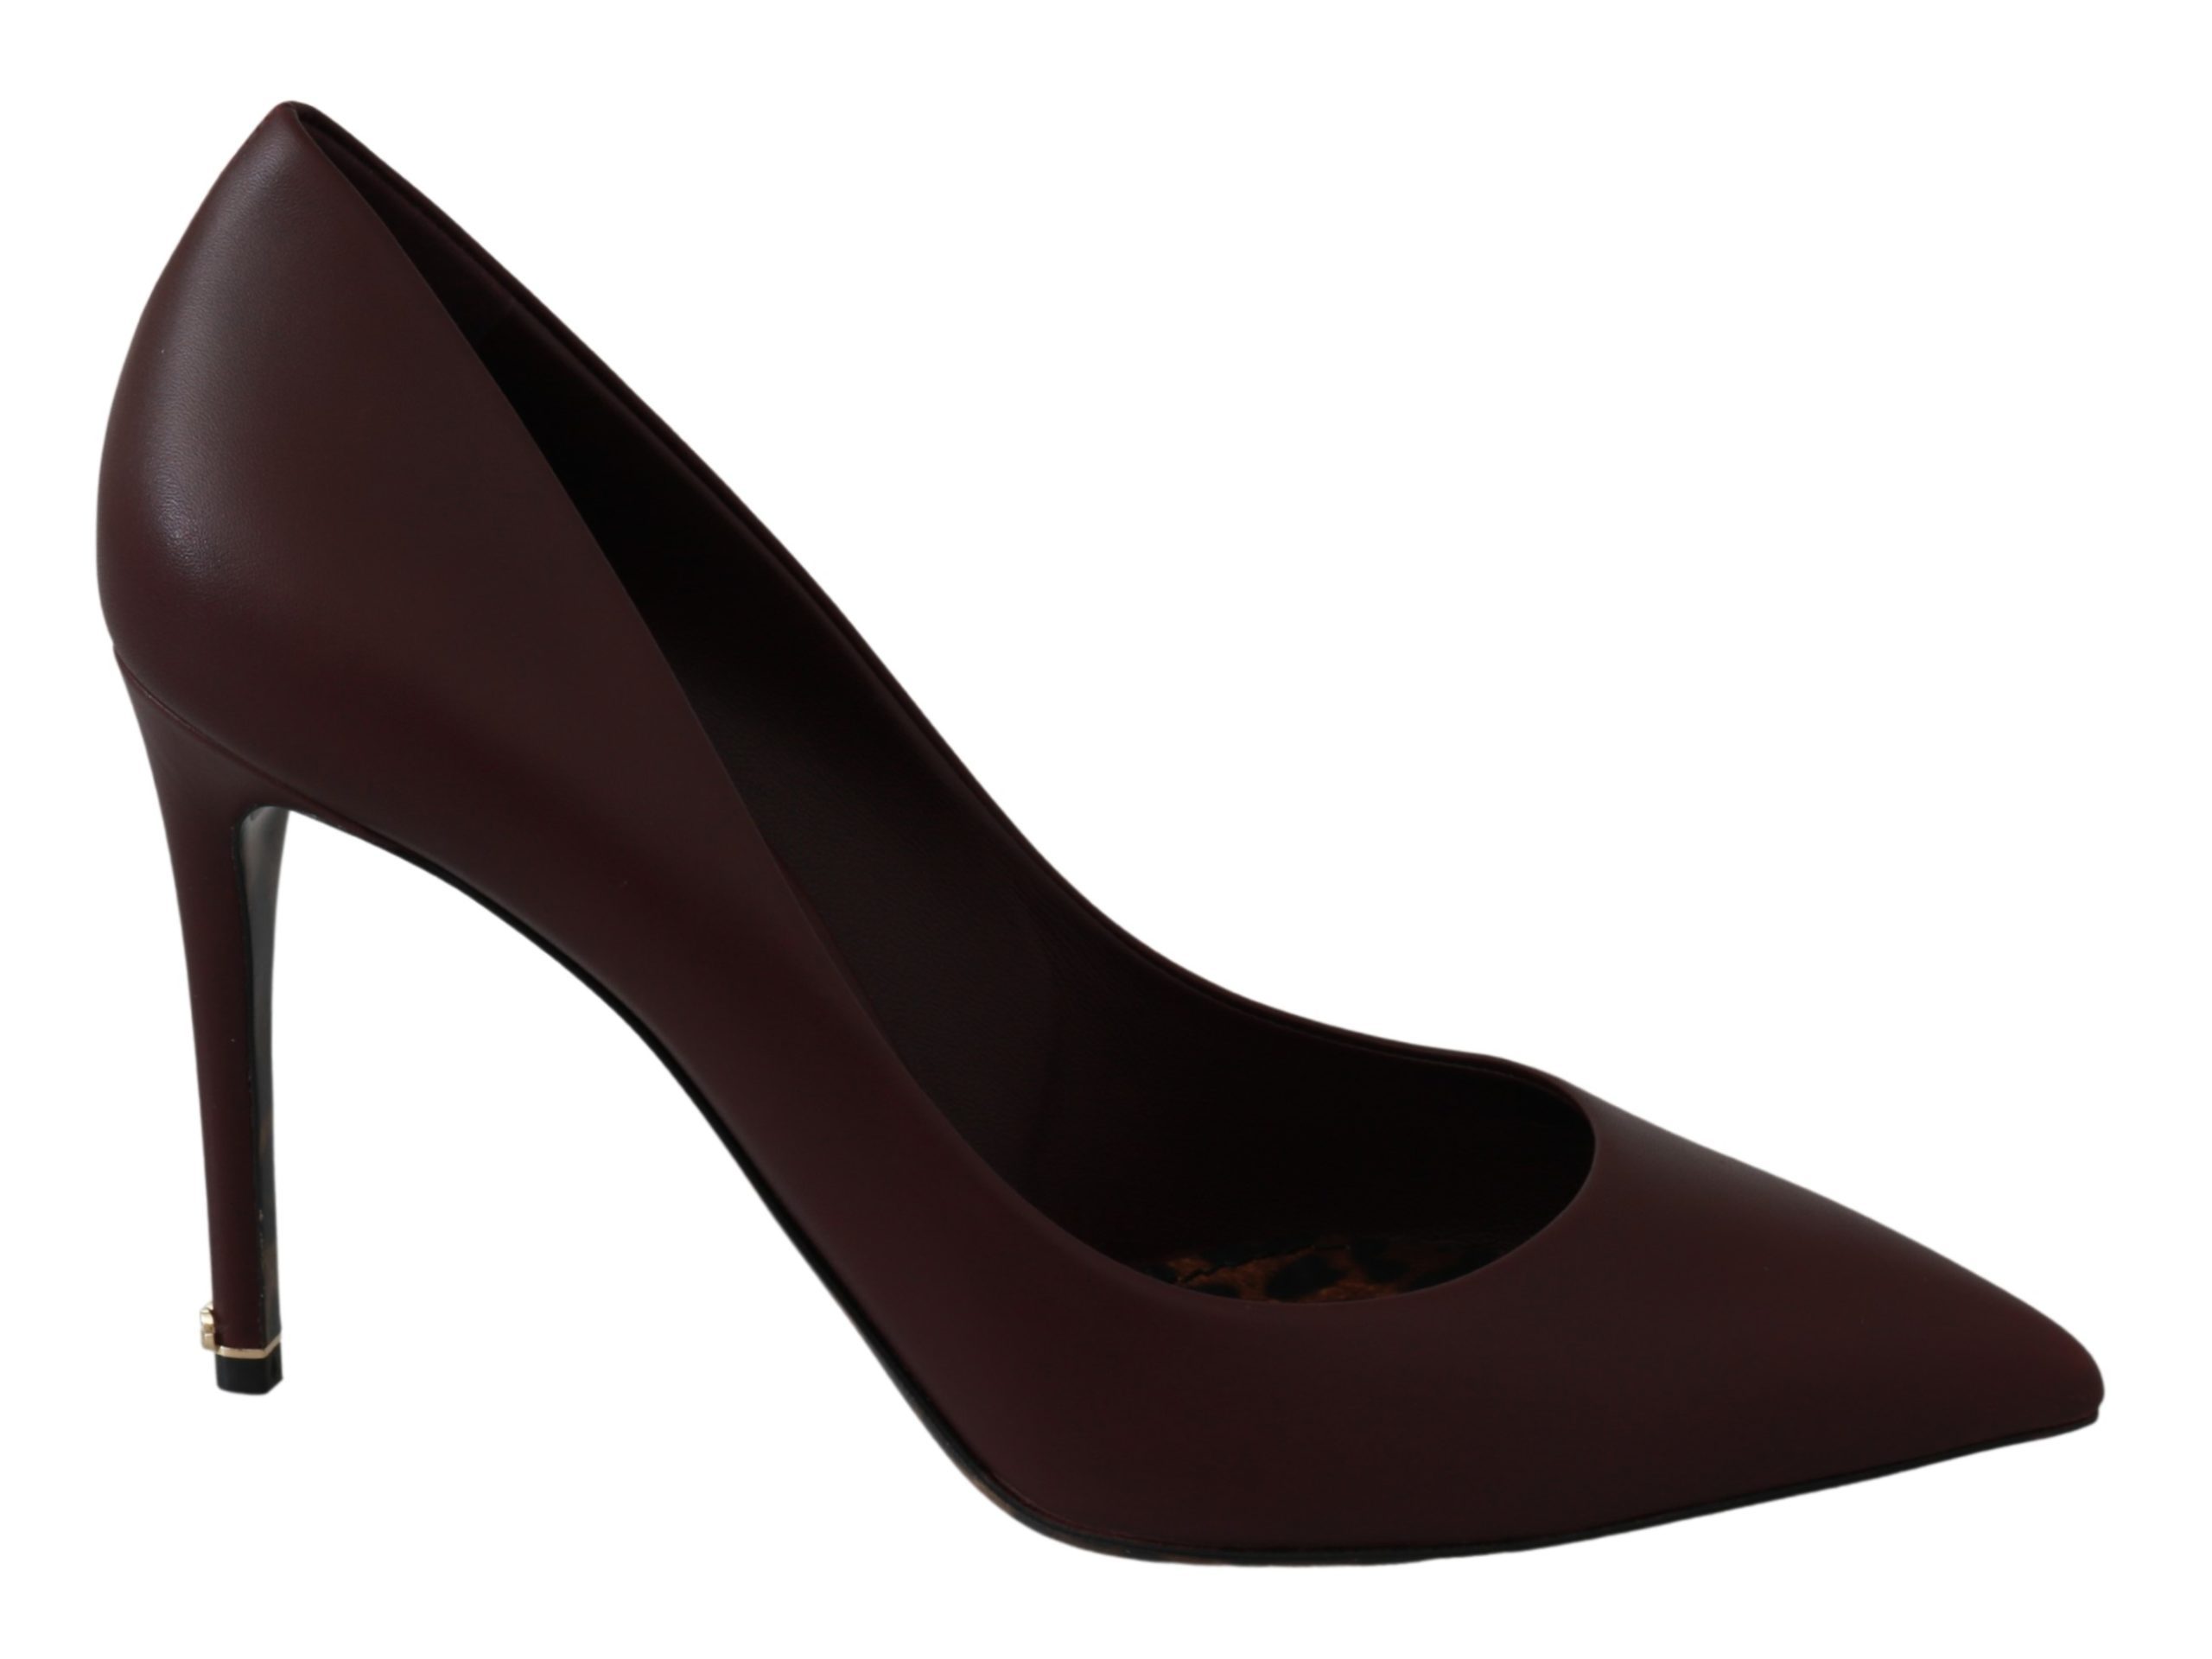 Dolce & Gabbana Women's Patent Leather Heels Pumps Shoes Brown LA6478 - EU35.5/US5